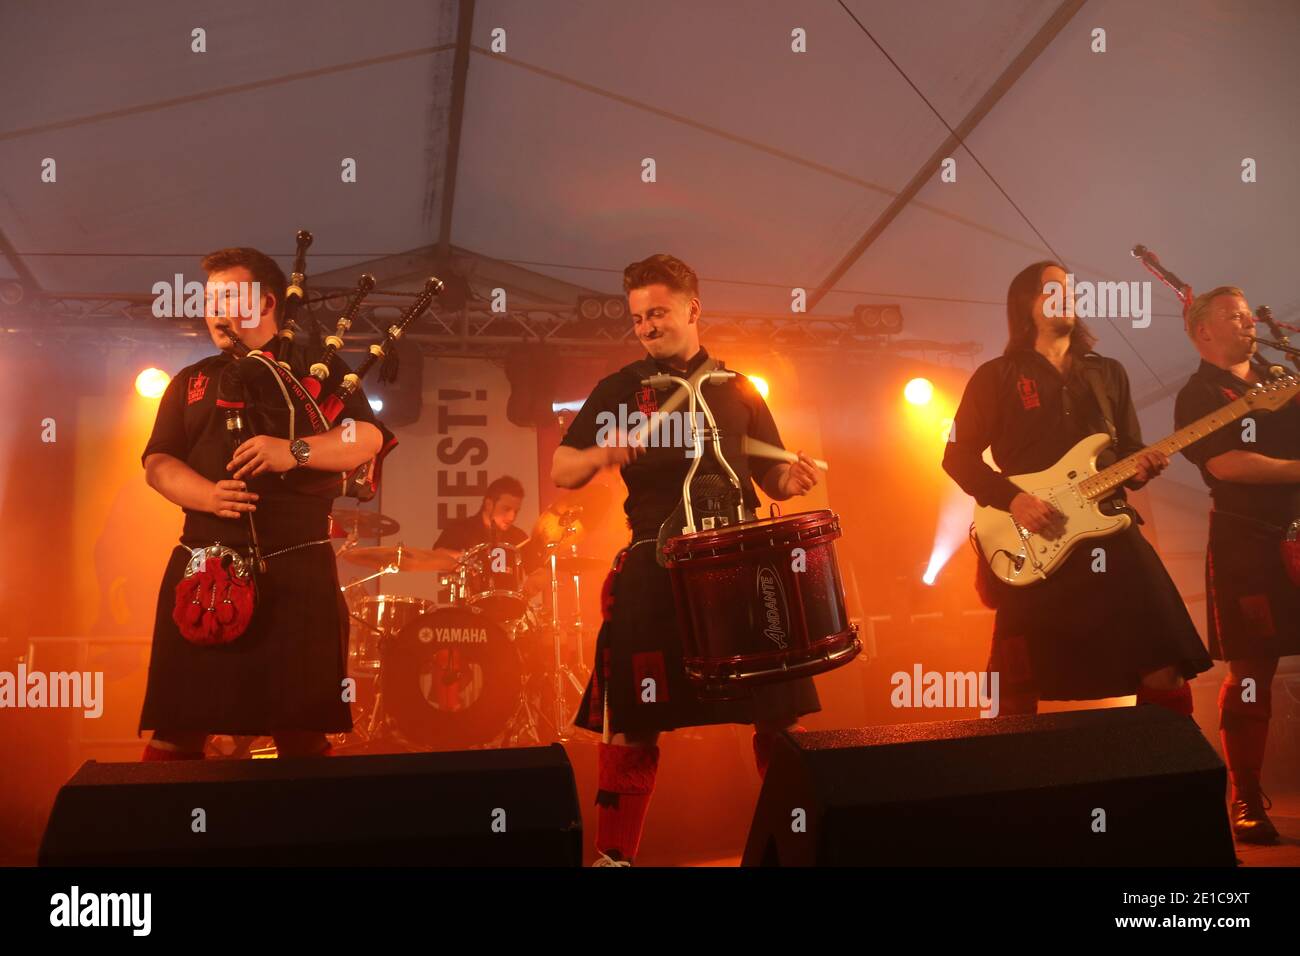 Alloway, Ayrshire, Schottland, Großbritannien, The Red Hot Chili Pipers sind eine keltische Rockband aus Schottland. Gegründet 2002, wurden sie 2007 international populär, nachdem sie die BBC-Talentshow gewonnen hatten.Wann werde ich berühmt sein? Das Line-up der Band umfasst drei Highland Dudelsackläufer und traditionelle Marching Snare, unterstützt von einer fünf- bis siebenköpfigen Band. Die jährliche Burns an ein, dass Festival . Eine kostenlose Veranstaltung von South Ayrshire Council organisiert, um den lokalen geboren schottischen Dichter Robert Burns zu feiern. festival bietet verschiedene Veranstaltungen von Live-Musik, Wohltätigkeitsstand, Phantasie Kleid, kostümierte Charaktere, Entertainer, Stockfoto